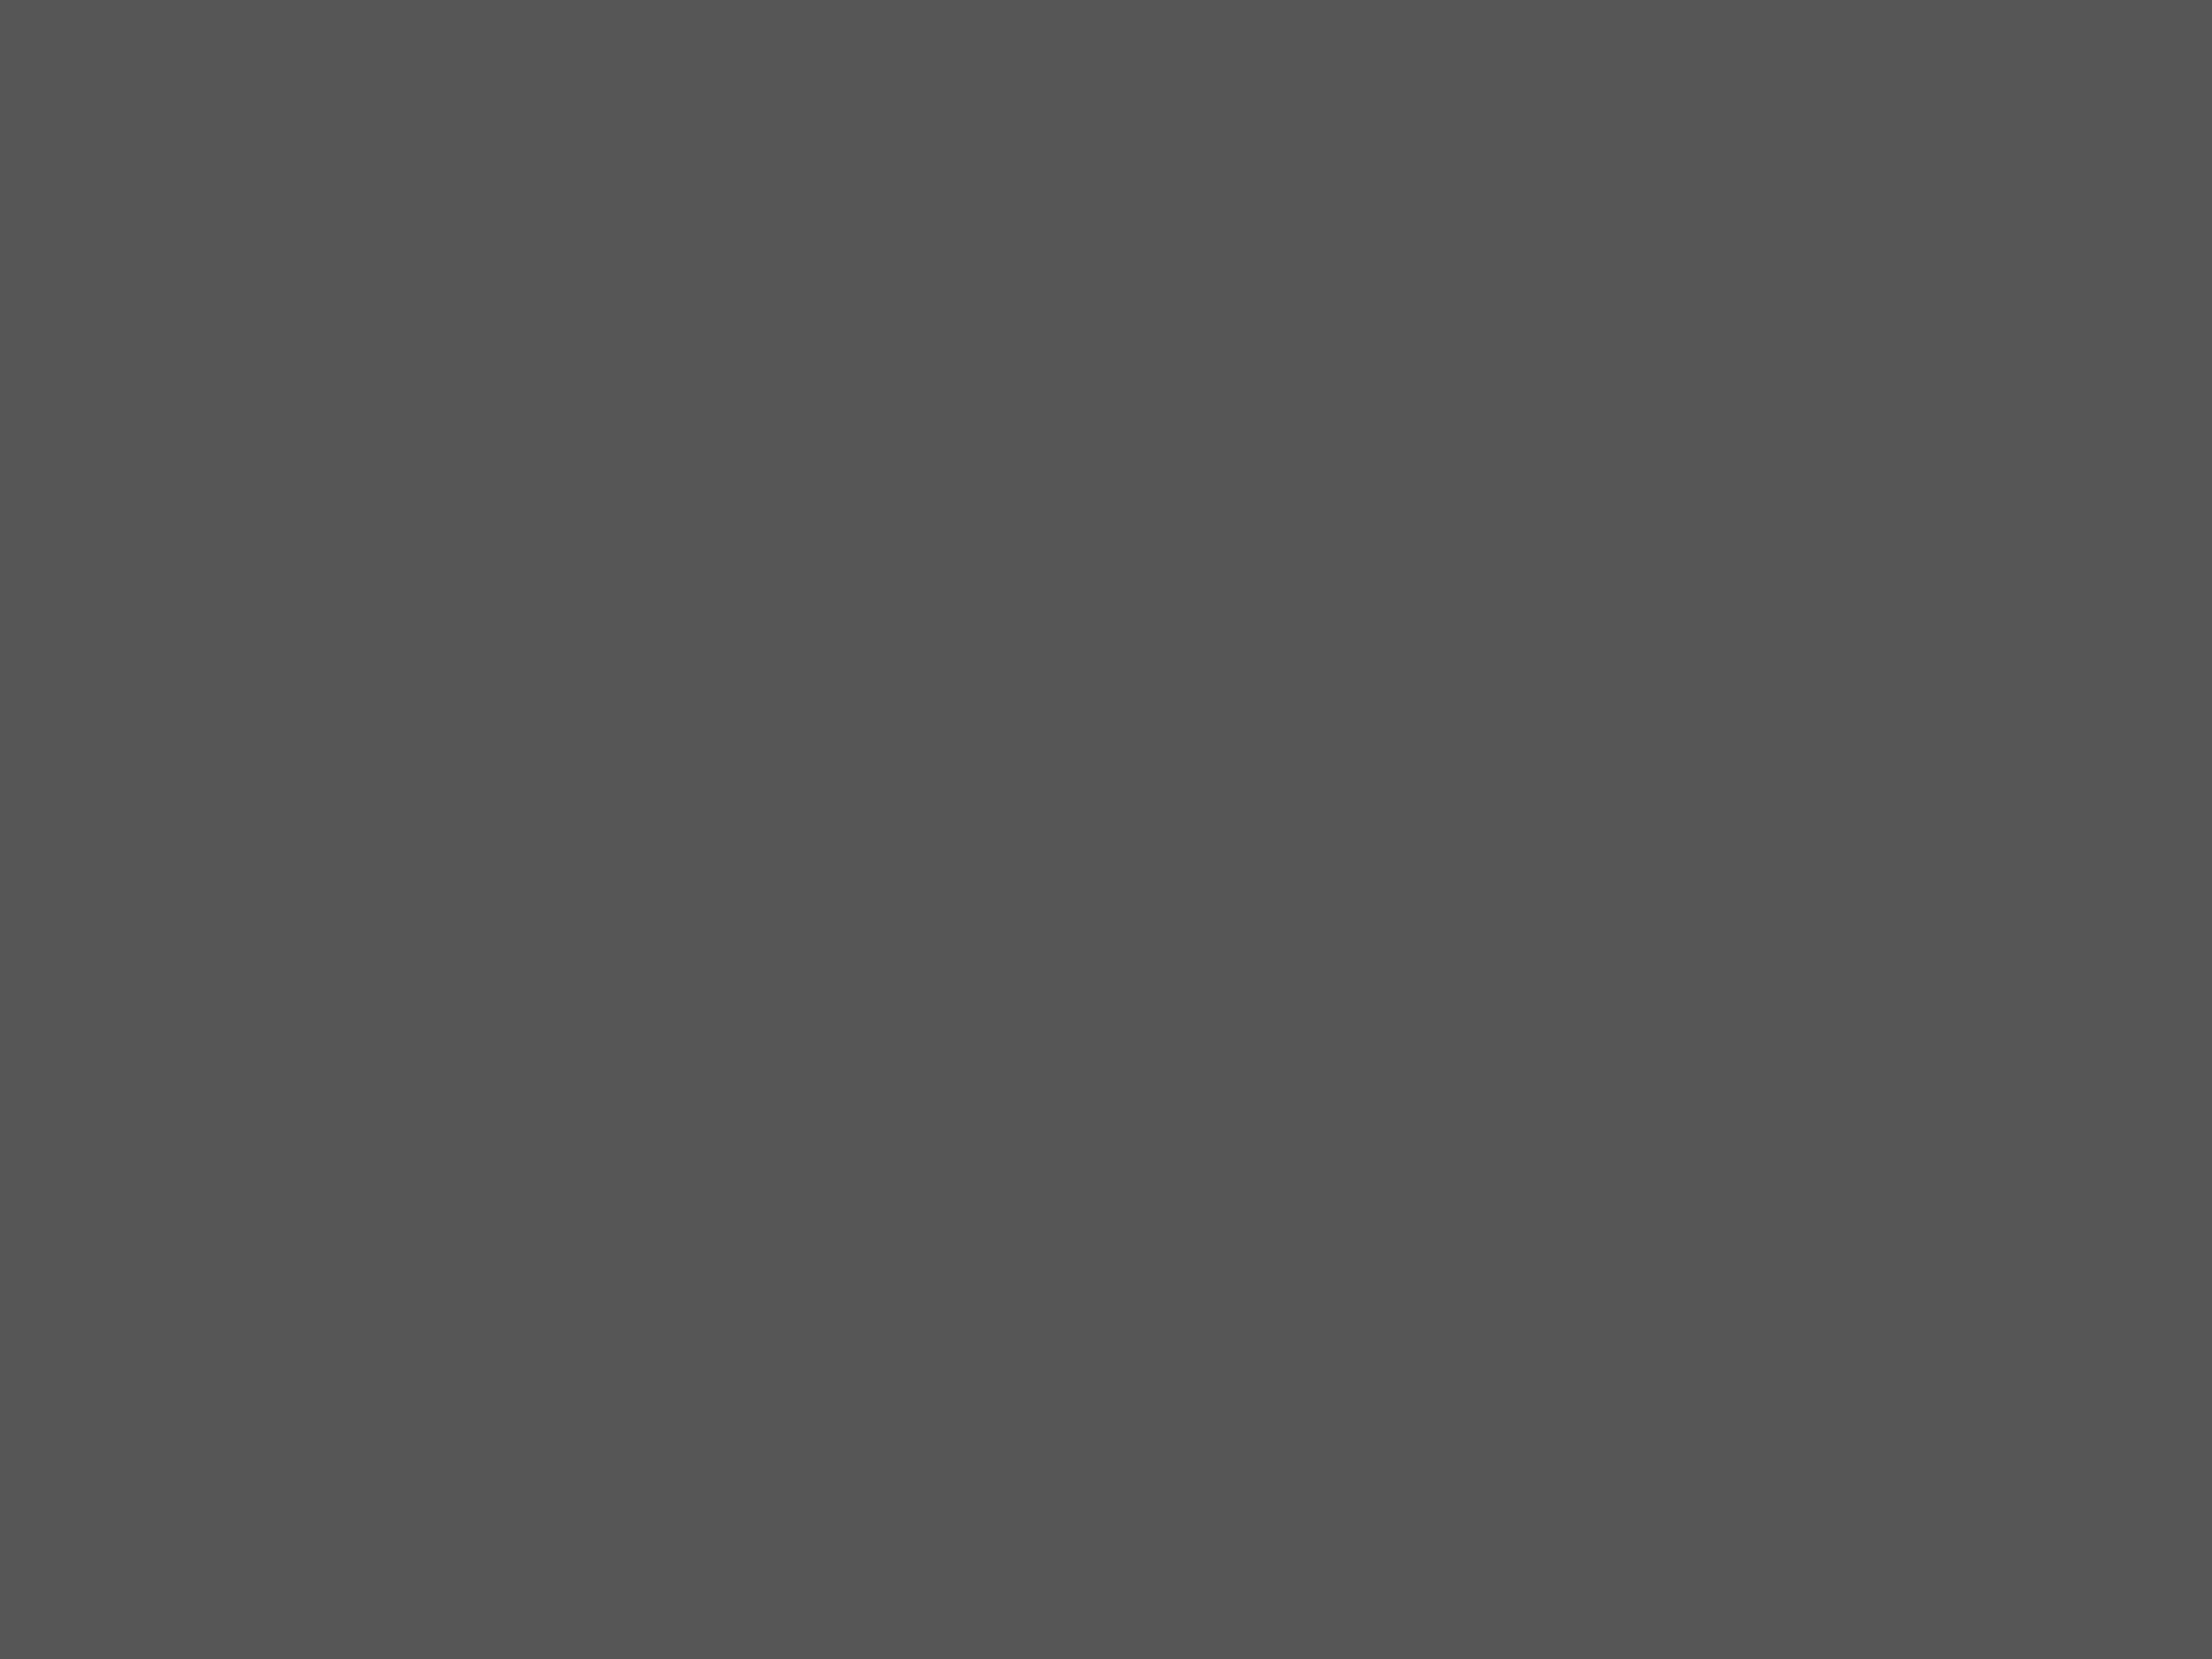 Афиша художественного фильма Владимира Меньшова «Москва слезам не верит» кинотеатра «Эмбасси-72». Нью-Йорк, США, 1981 год. Фотография: И. Макурин / Фотохроника ТАСС